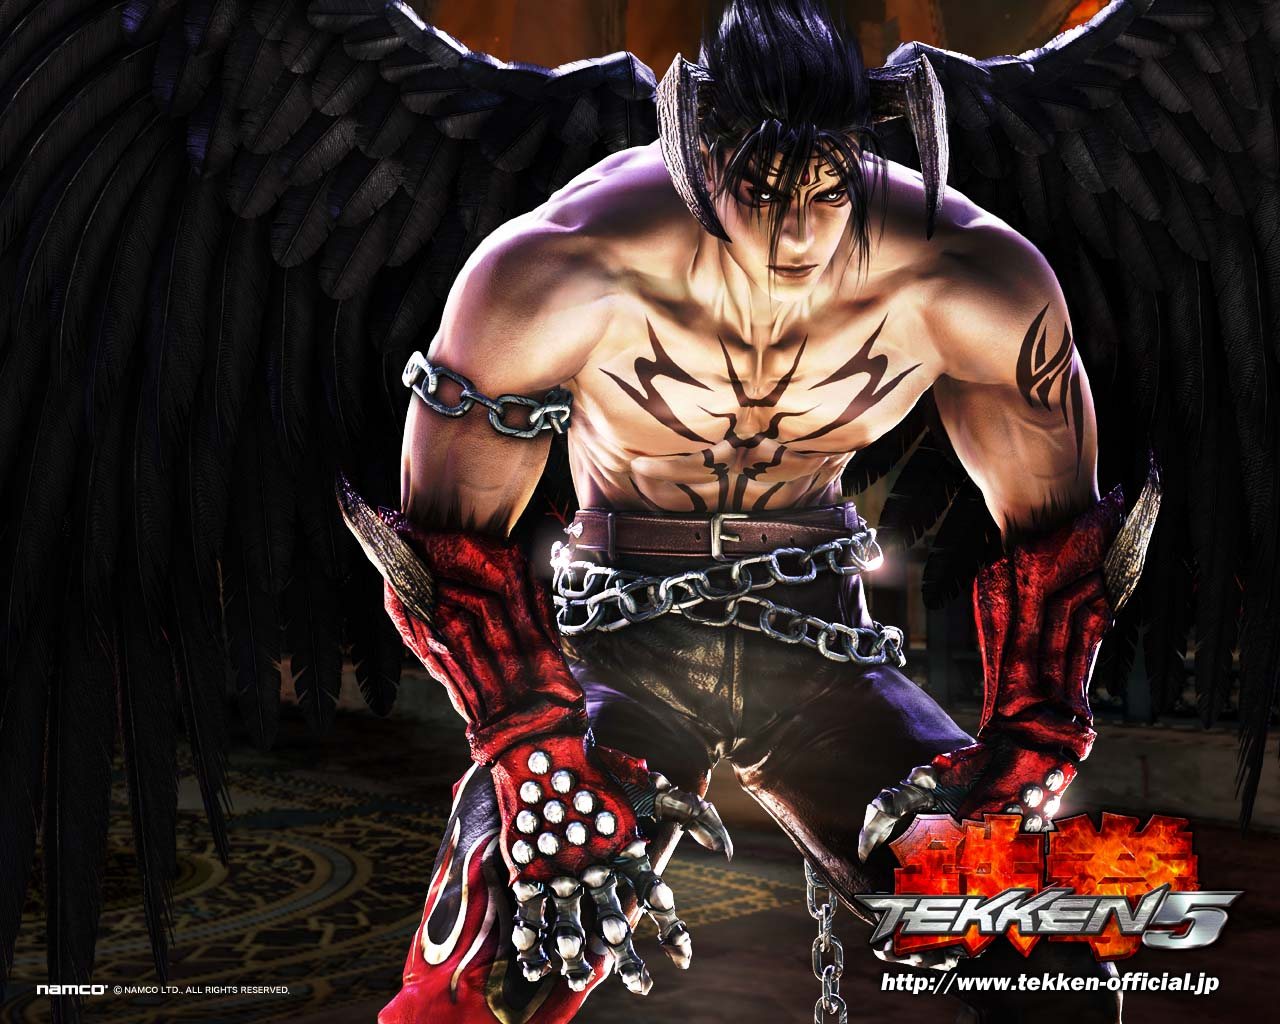 Confidencial 3 - Ganryou é um personagem fictício do jogo de luta da série  Tekken, presente em Tekken, Tekken 2, Tekken Tag Tournament, Tekken 5, e Tekken  5: Dark Resurrection. Originalmente um